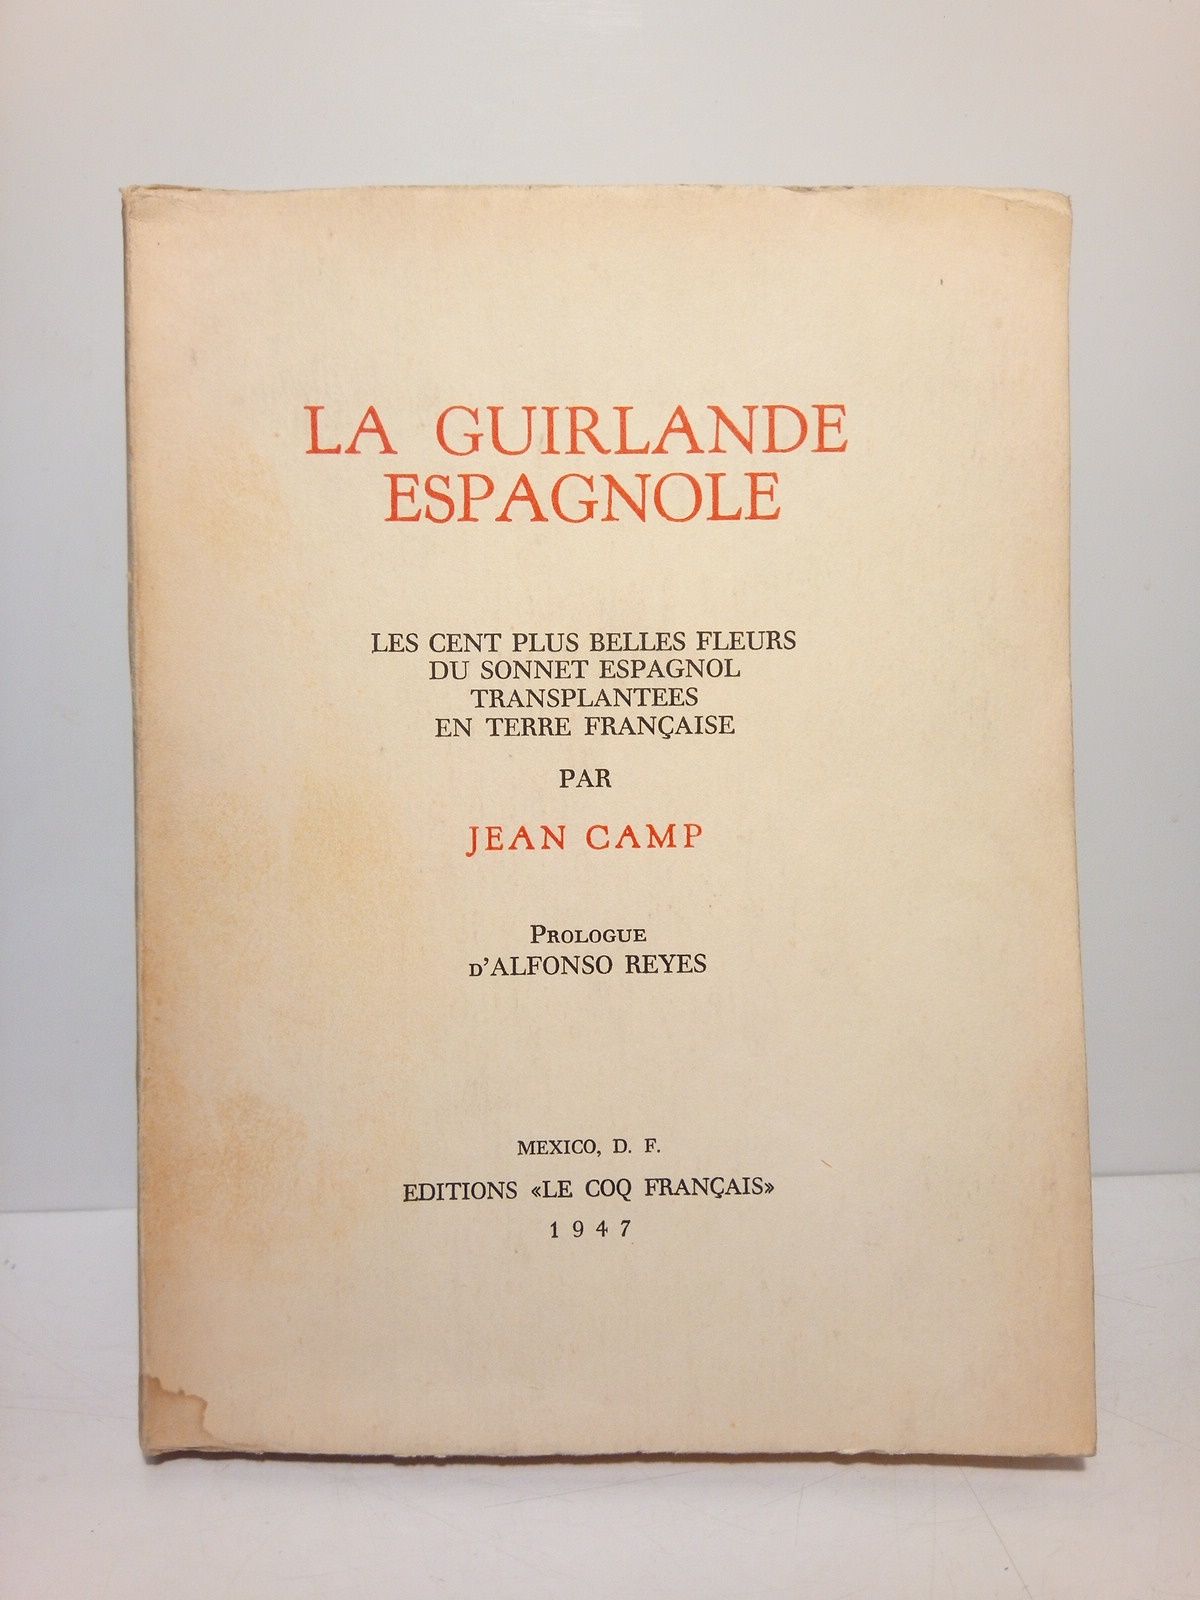 CAMP, Jean [selecciona] - La guirlande espagnole: Les cent plus belles fleurs du sonnet espagnol transplantees en terre franaise /  Prologue d'Alfonso Reyes